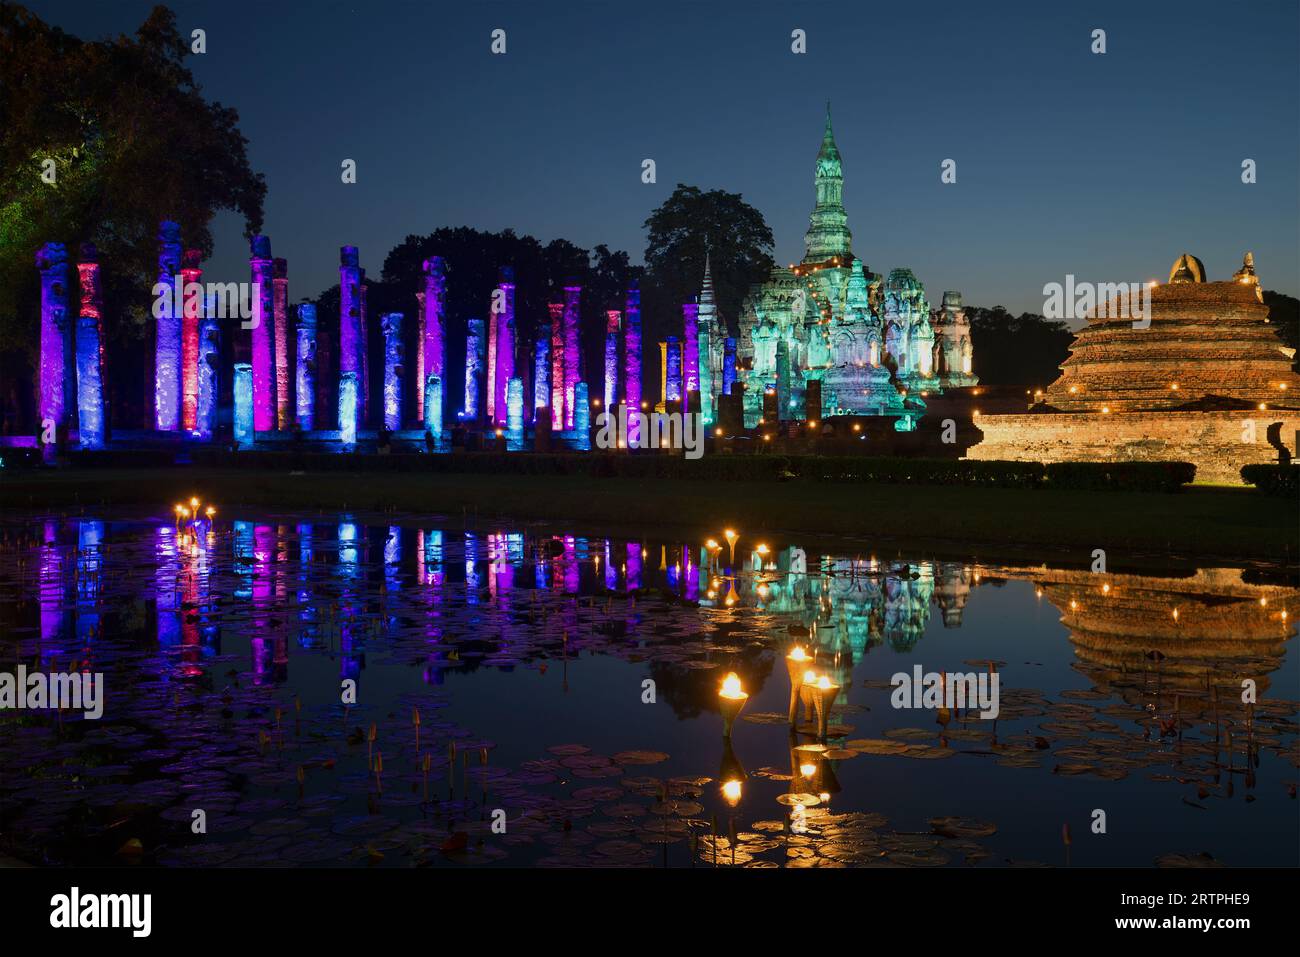 Le rovine del tempio buddista Wat Mahathat, con luci festive in tarda serata. La festa della luce in onore del 25° anniversario della Foto Stock